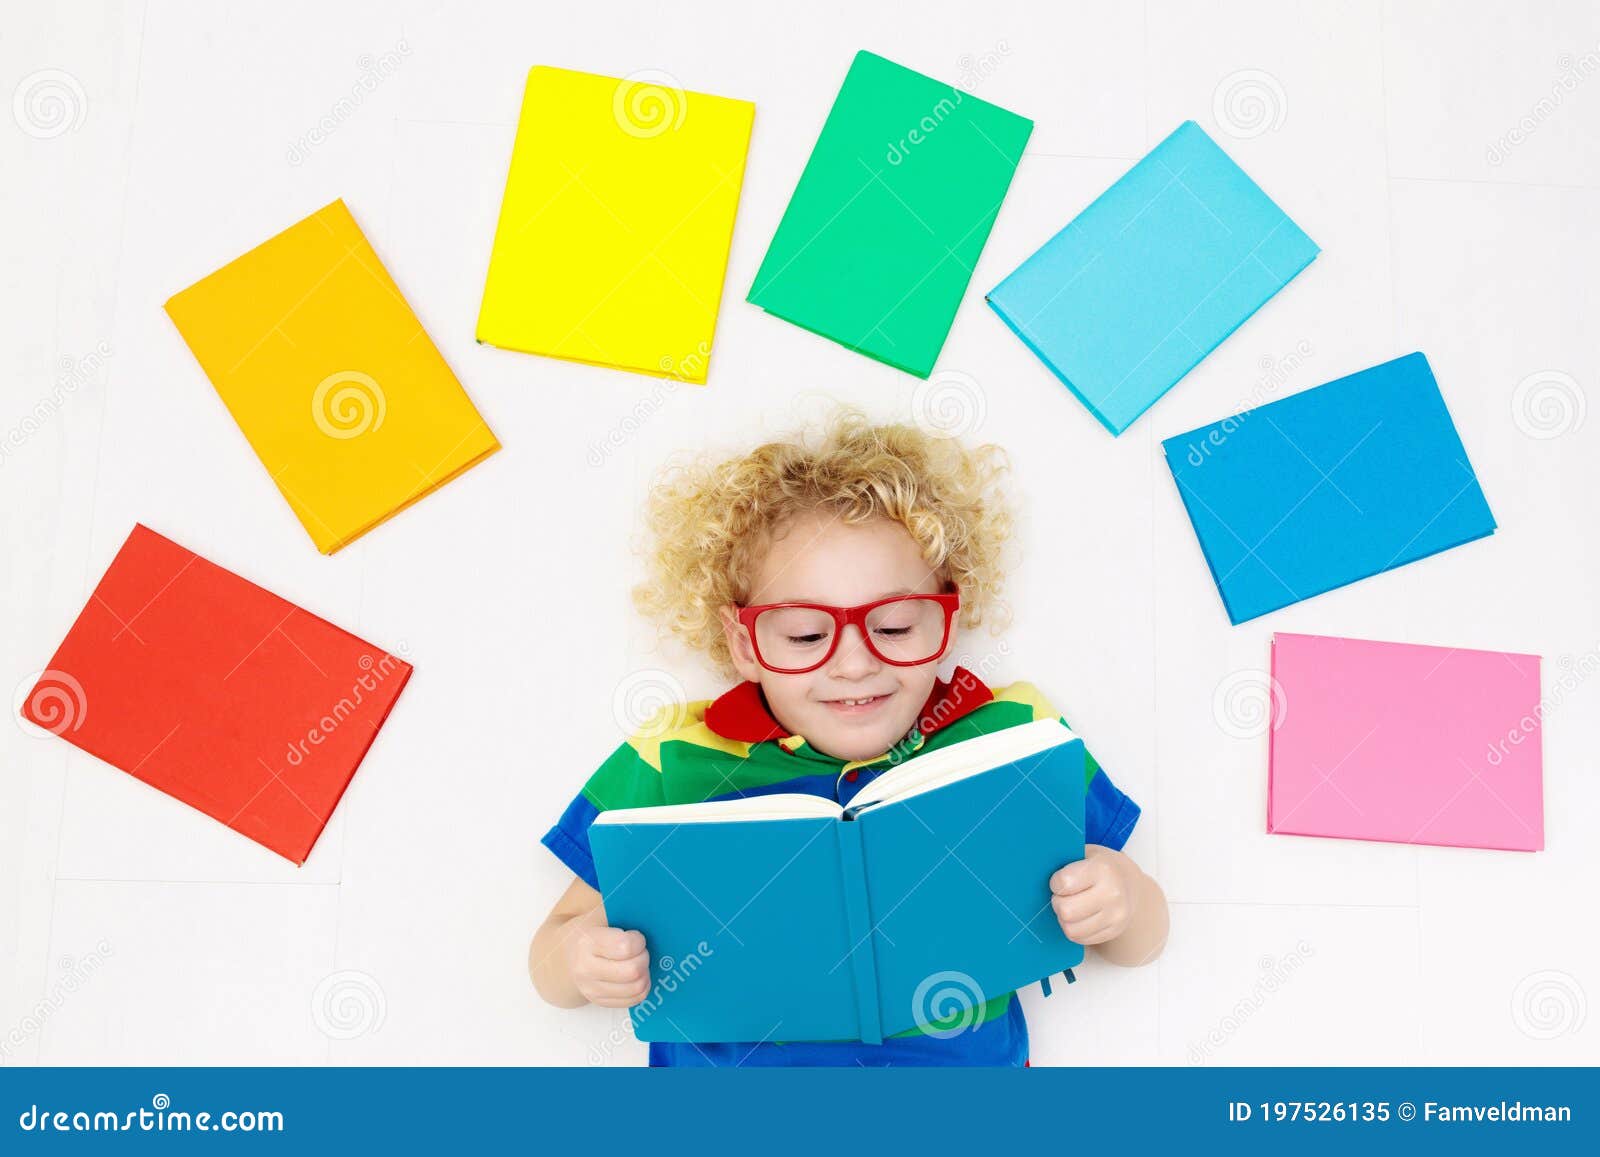 Libros De Lectura Para Niños Escuela Para Niños Imagen de archivo - Imagen  de divertido, casero: 197526135